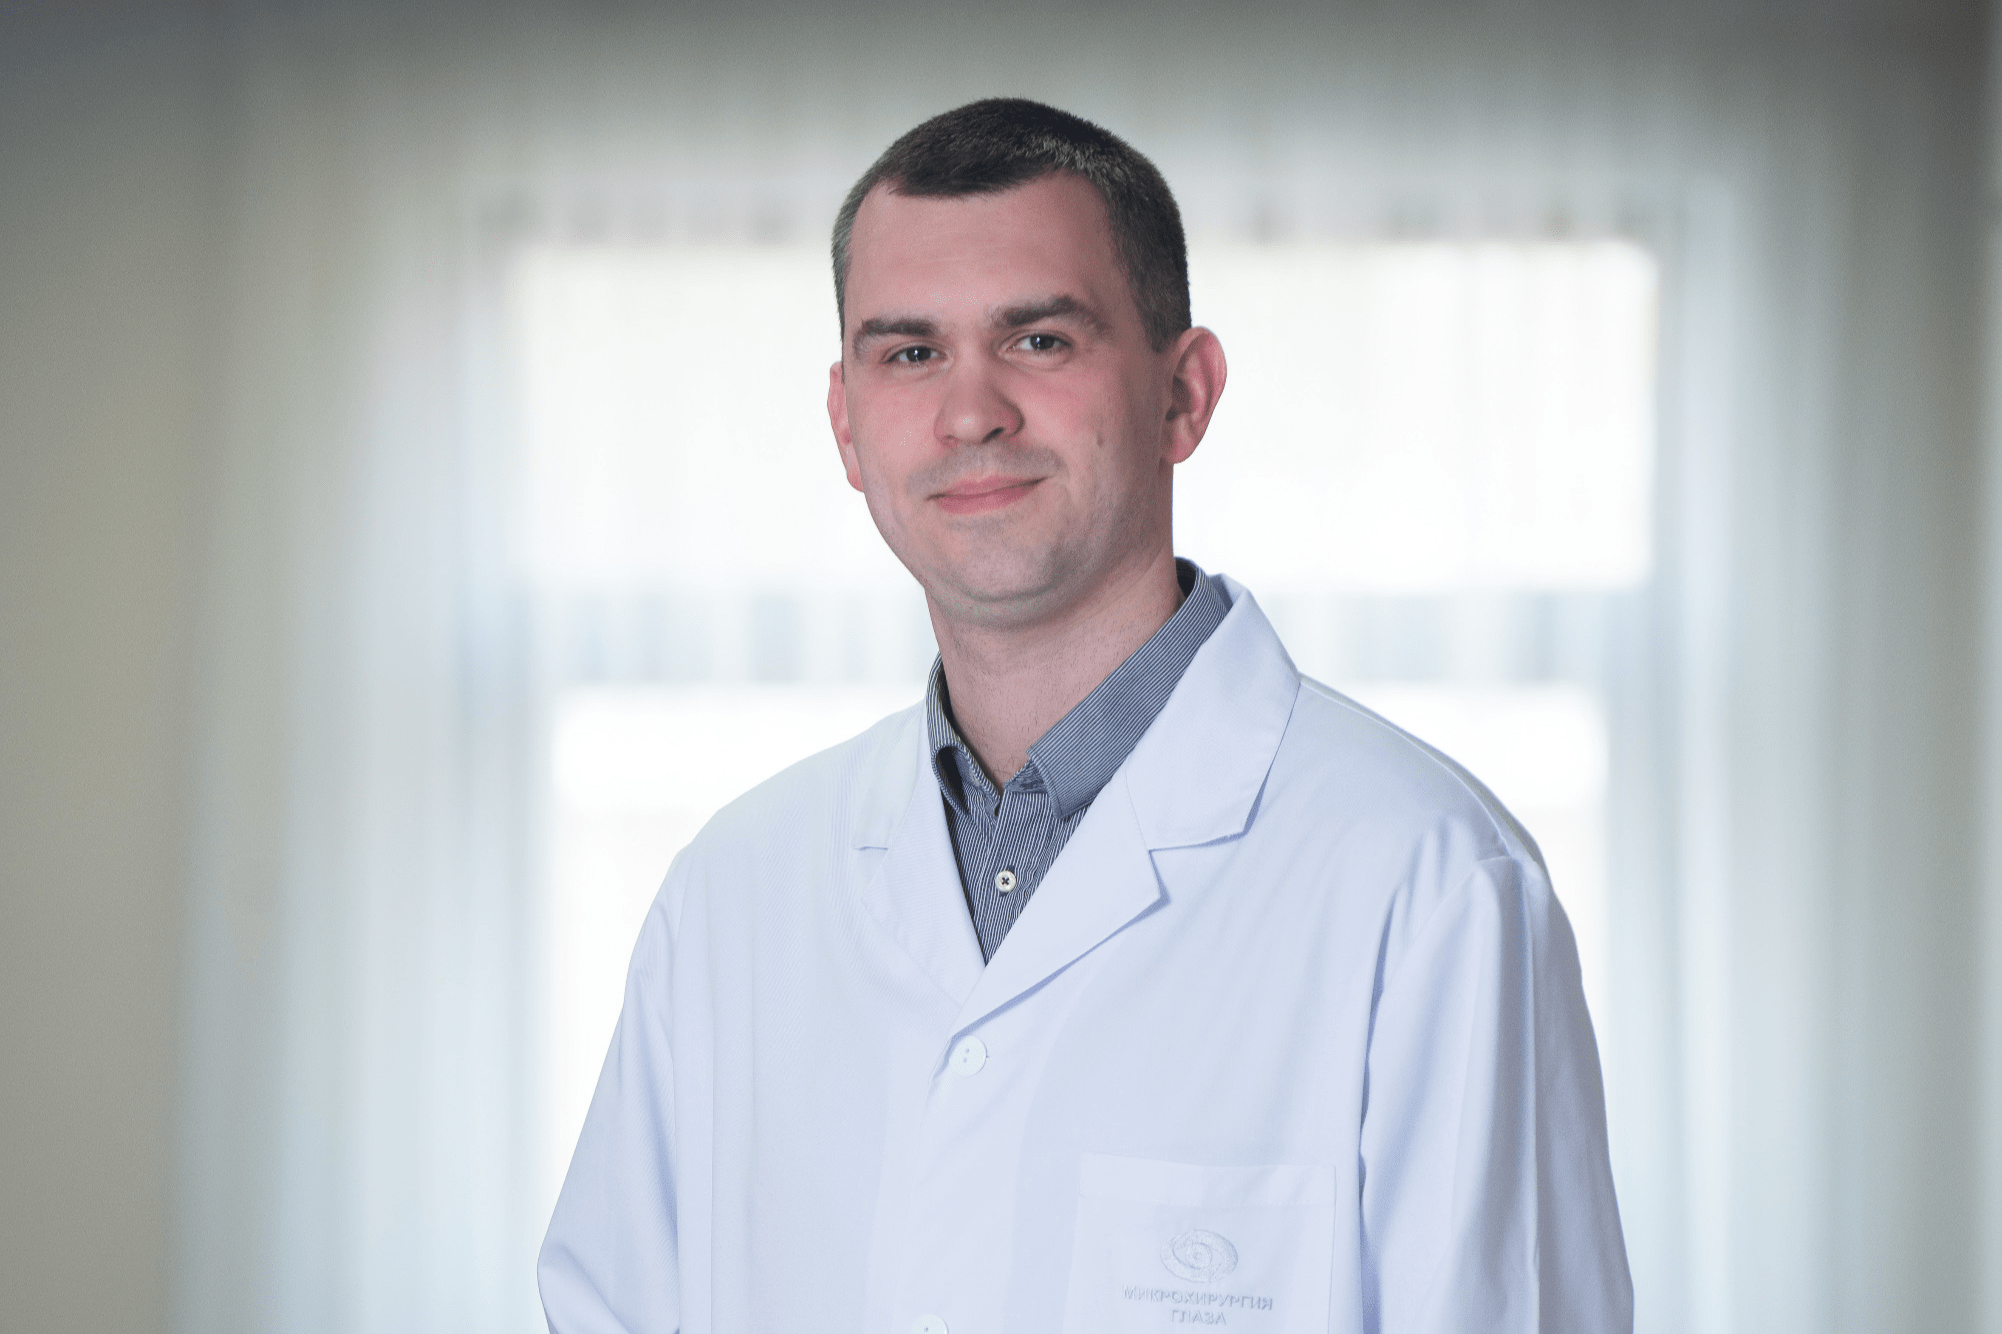 Андрей Юрьевич Клейменов — врач-офтальмохирург отделения витреоретинальной хирургии